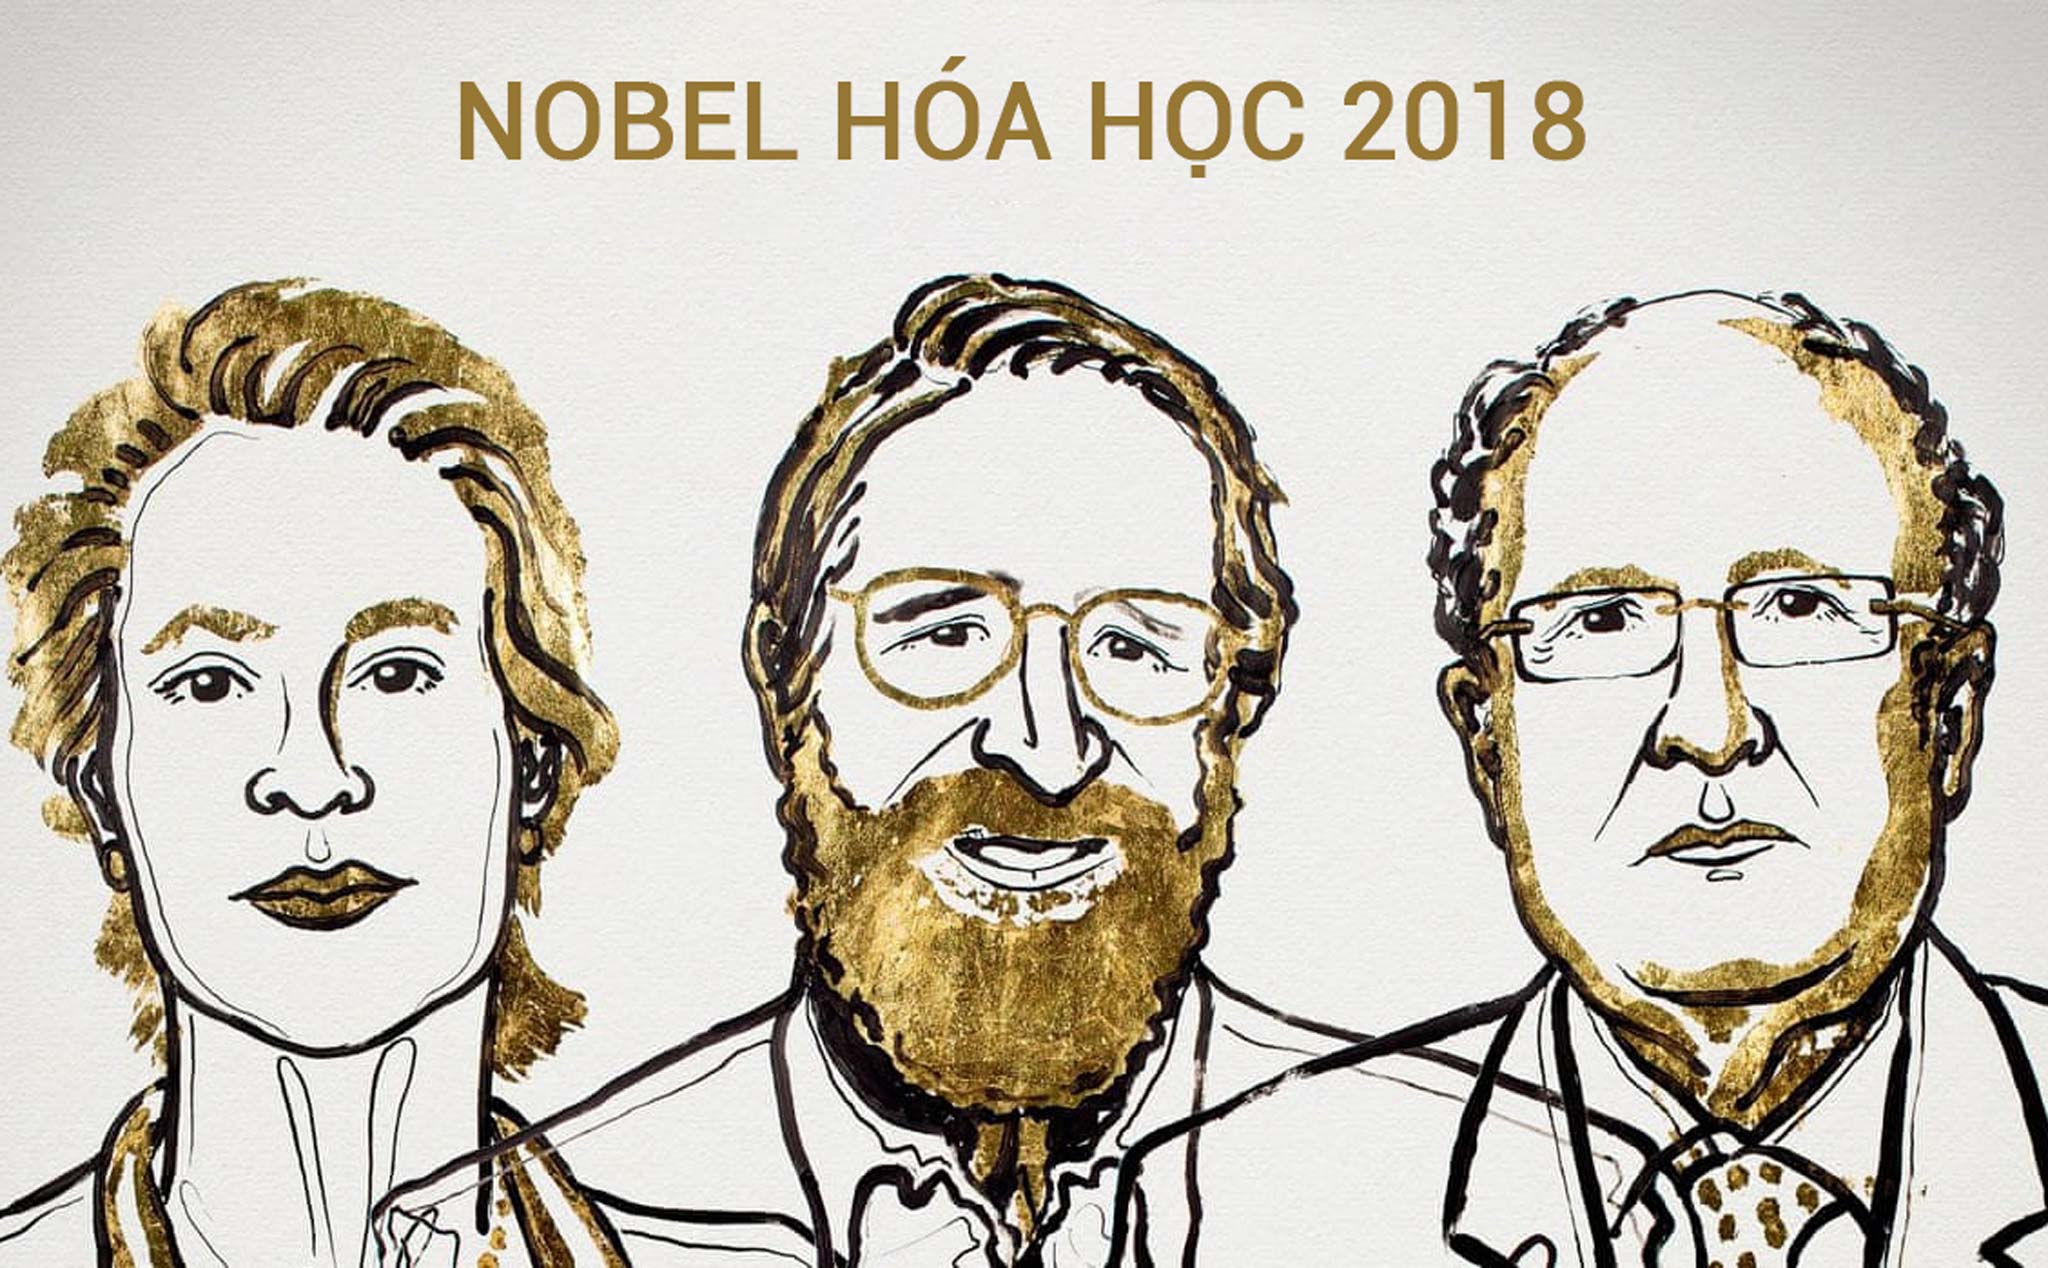 Nobel Hoá học 2018 vinh danh người ứng dụng nguyên tắc tiến hóa để chế tạo thuốc mới